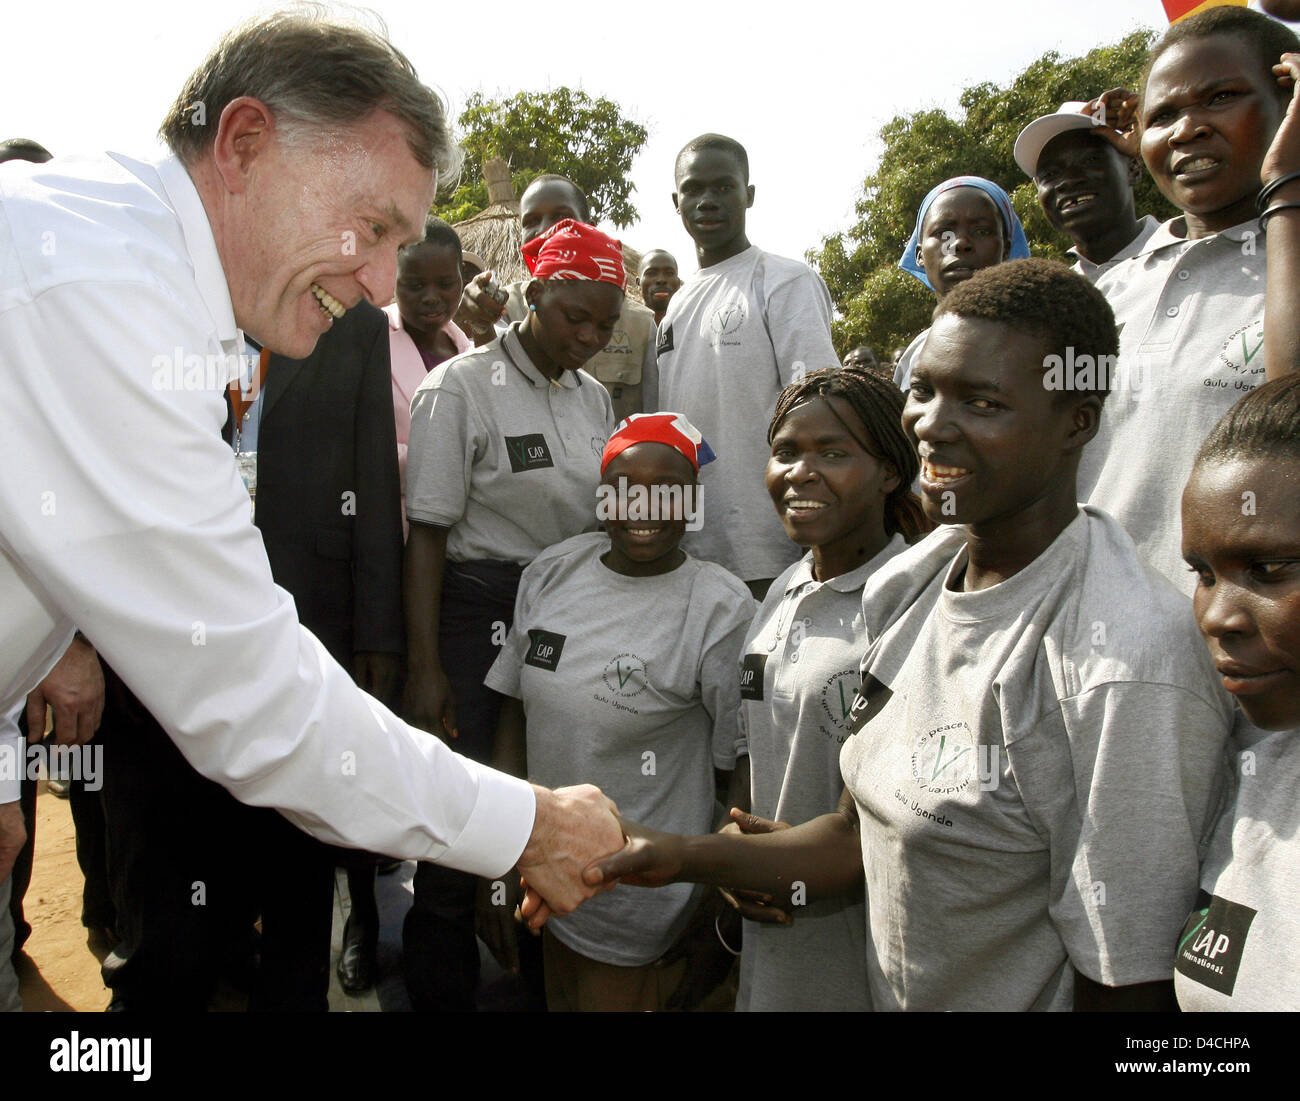 Deutschlands Präsident Horst Köhler (L) grüßt Frauen im Camp für innere Flüchtlinge in Gulu, Uganda, 5. Februar 2008. Herr Koehler und seine Frau Eva Koehler sind auf einem dreitägigen Besuch in Uganda und wird dann weiter nach Ruanda. Foto: WOLFGANG KUMM Stockfoto